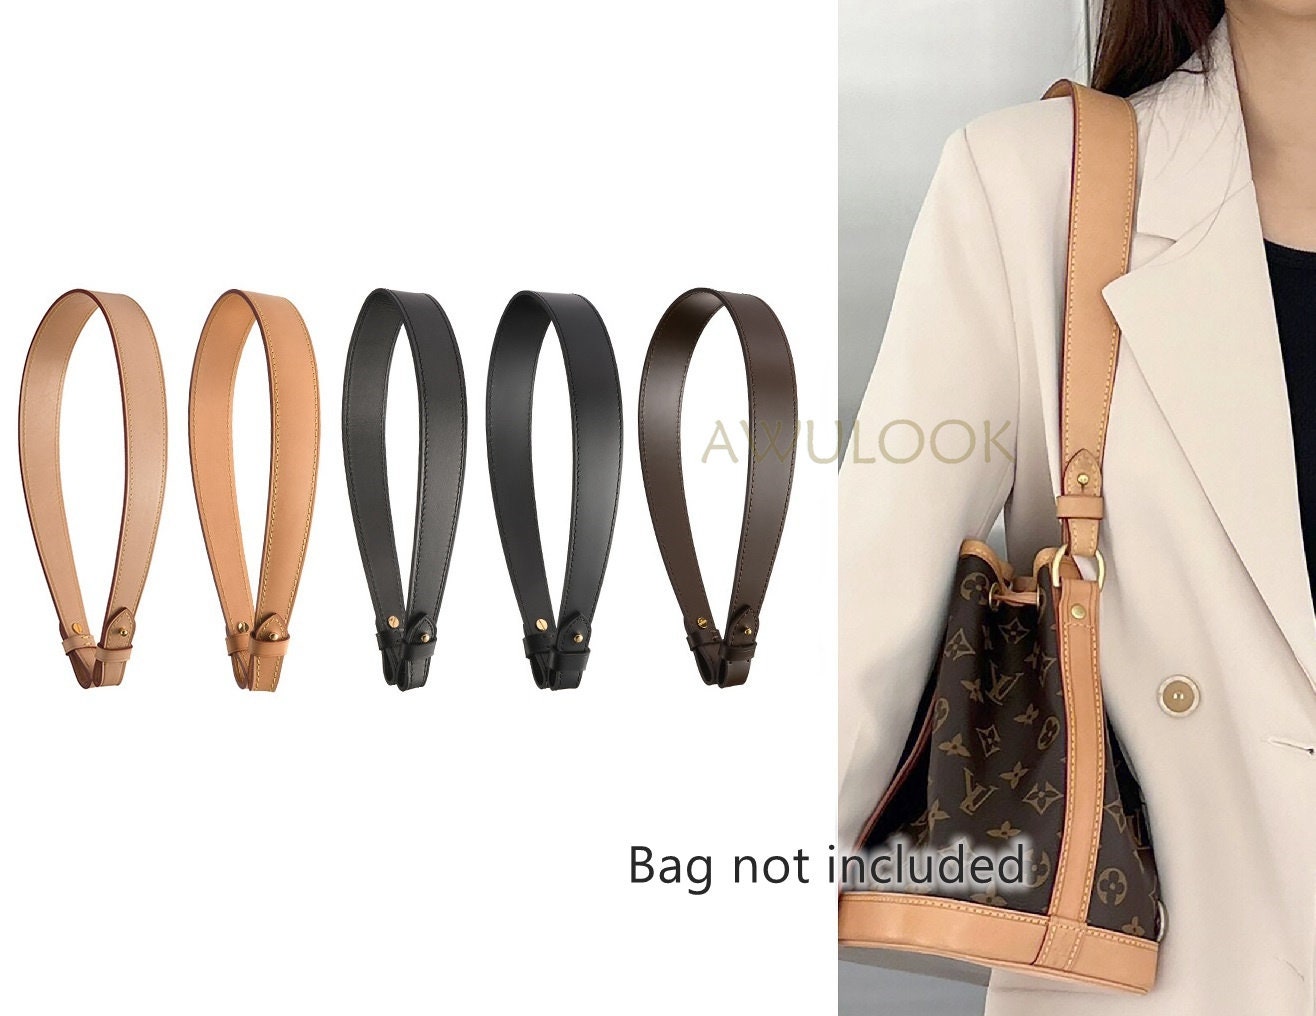 Buy For neonoe BB Bag Bottom Length 8 Inches/20 Cm Online in India 